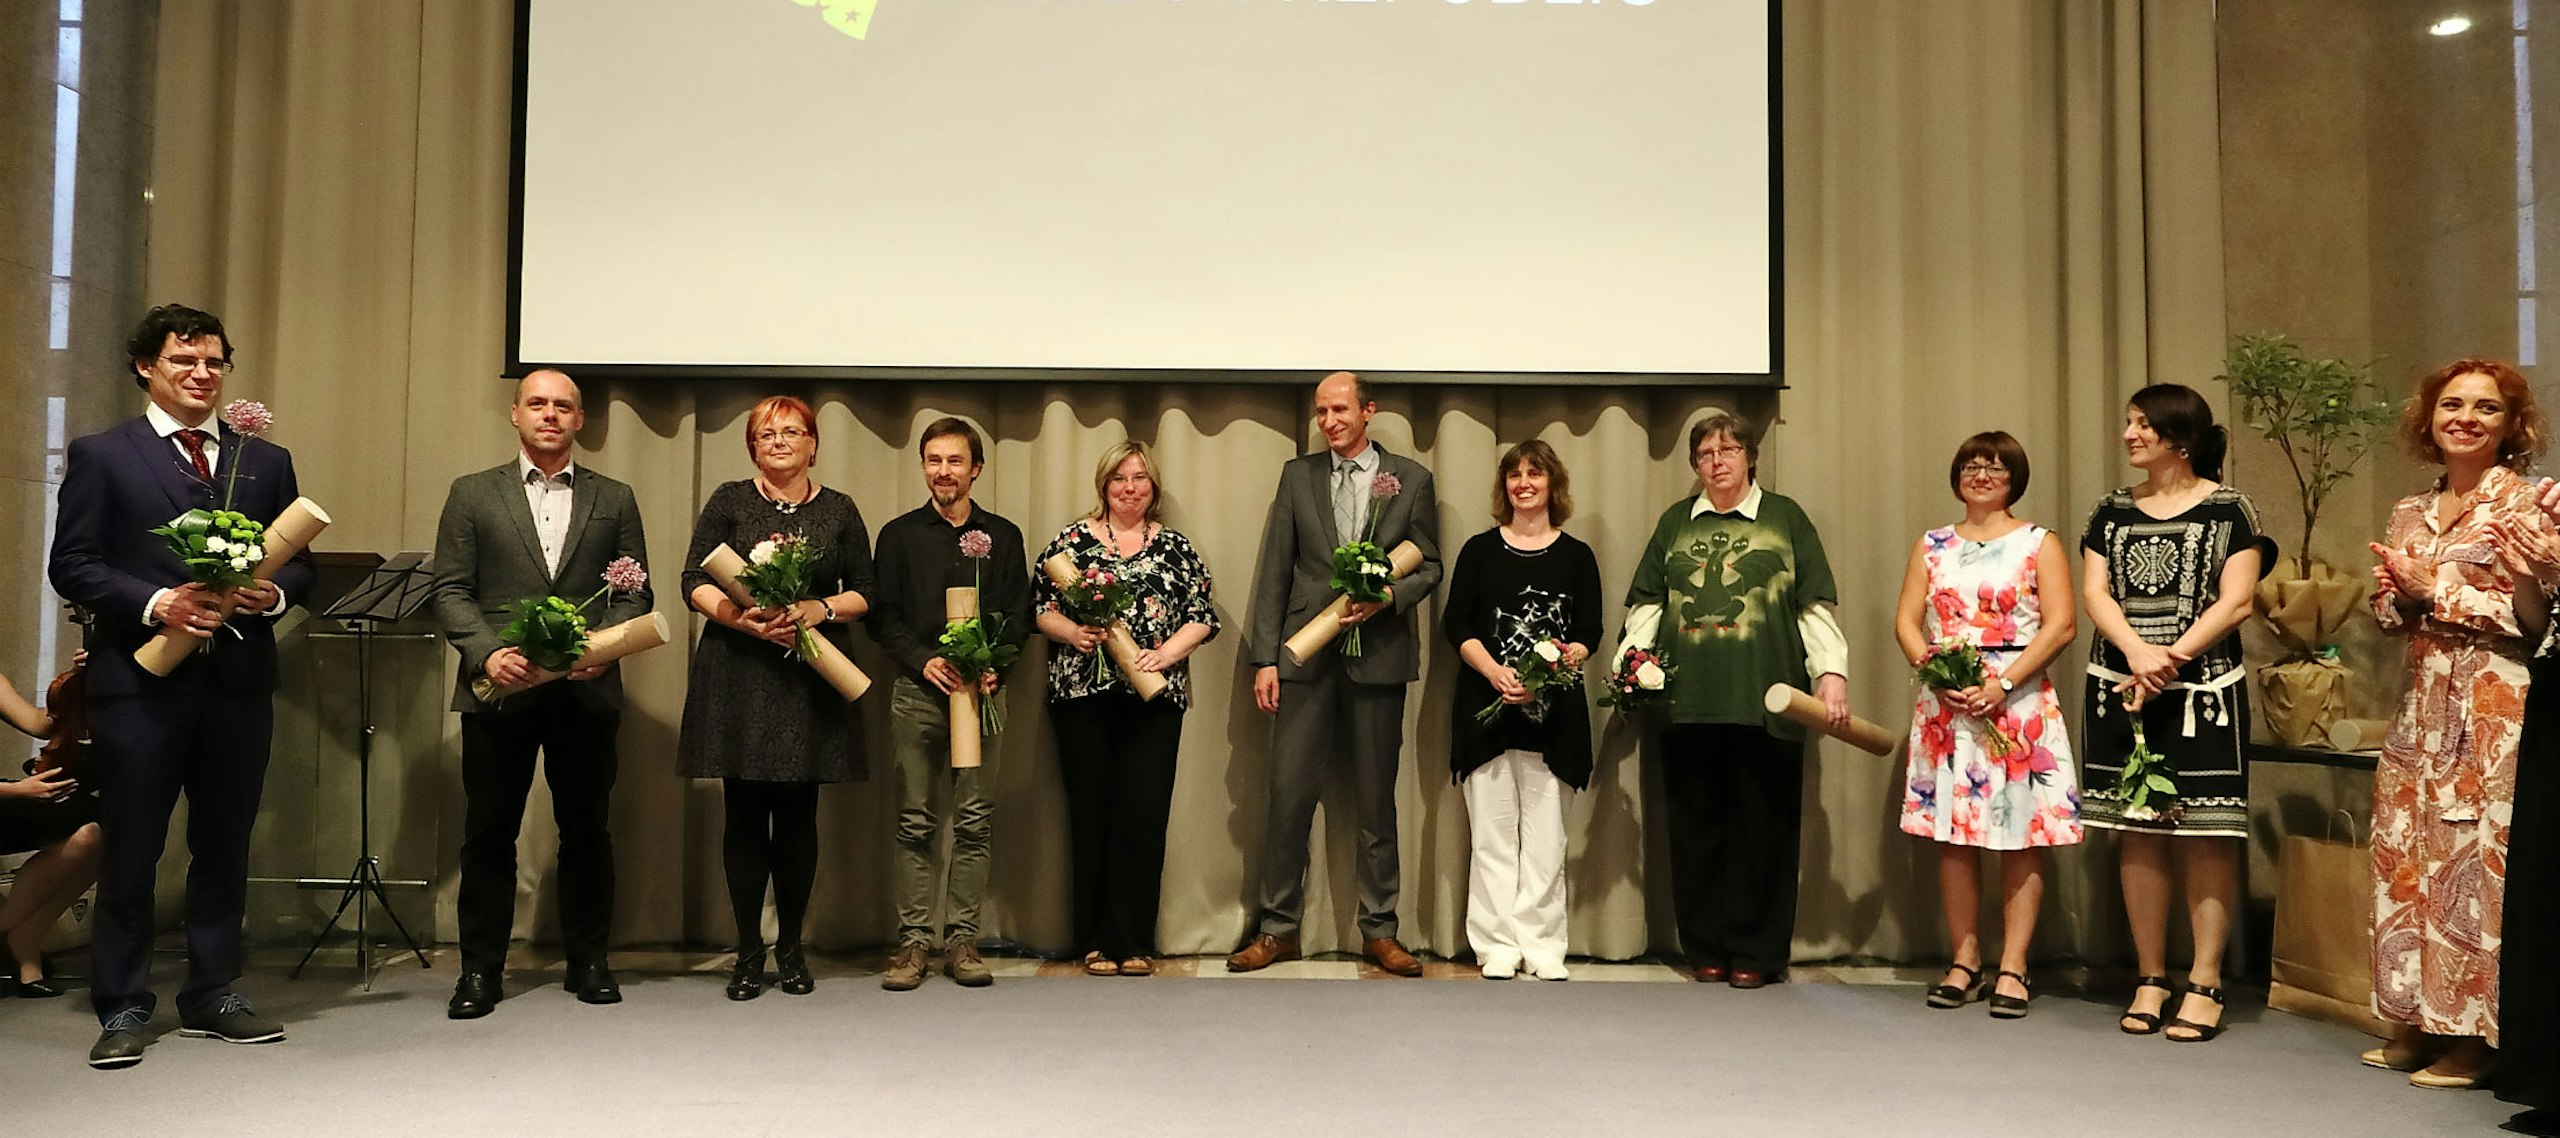 Výsledky Global Teacher Prize Czech Republic